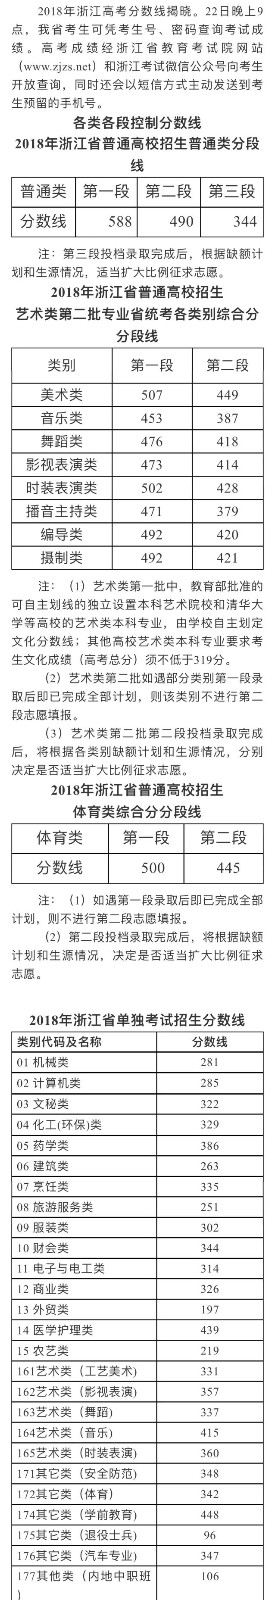 2018年浙江省高考文化分数线公布